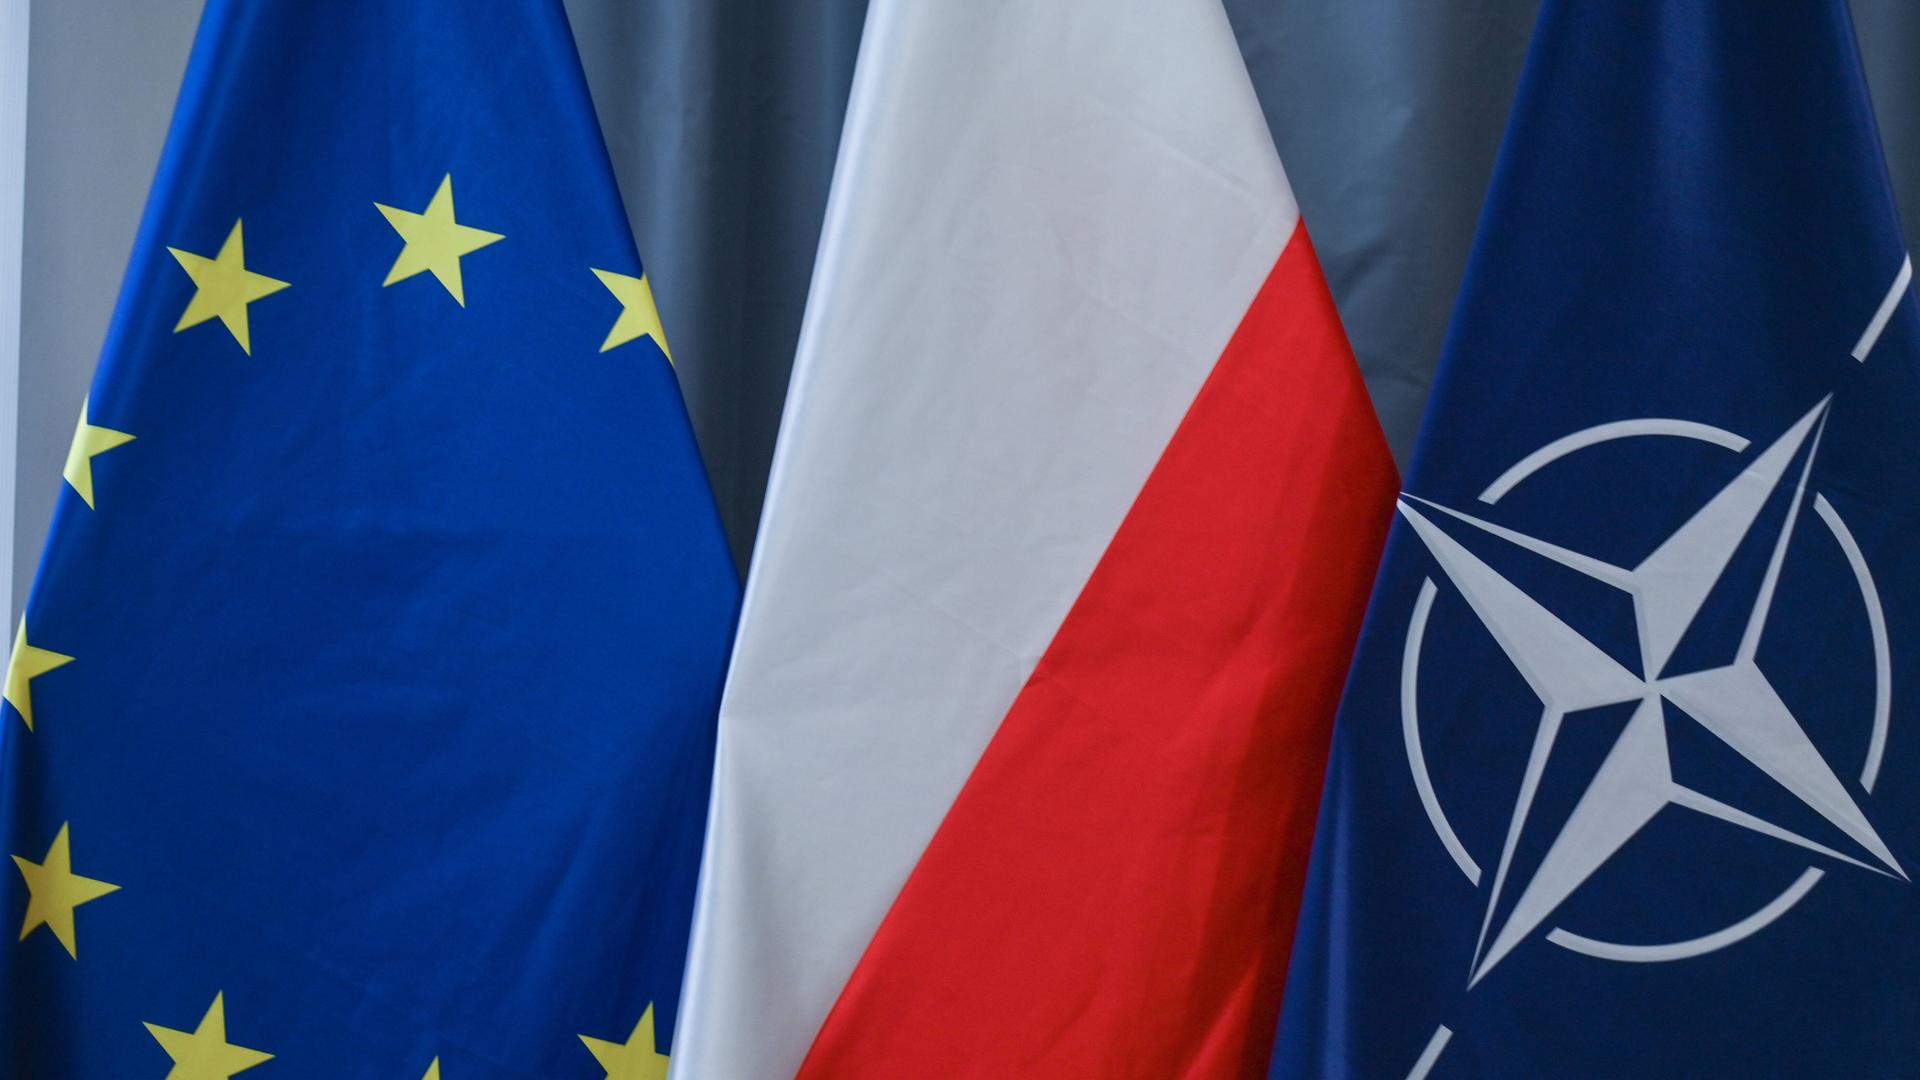 Drei Flaggen nebeneinander; die Flagge der EU, Polens und der NATO.